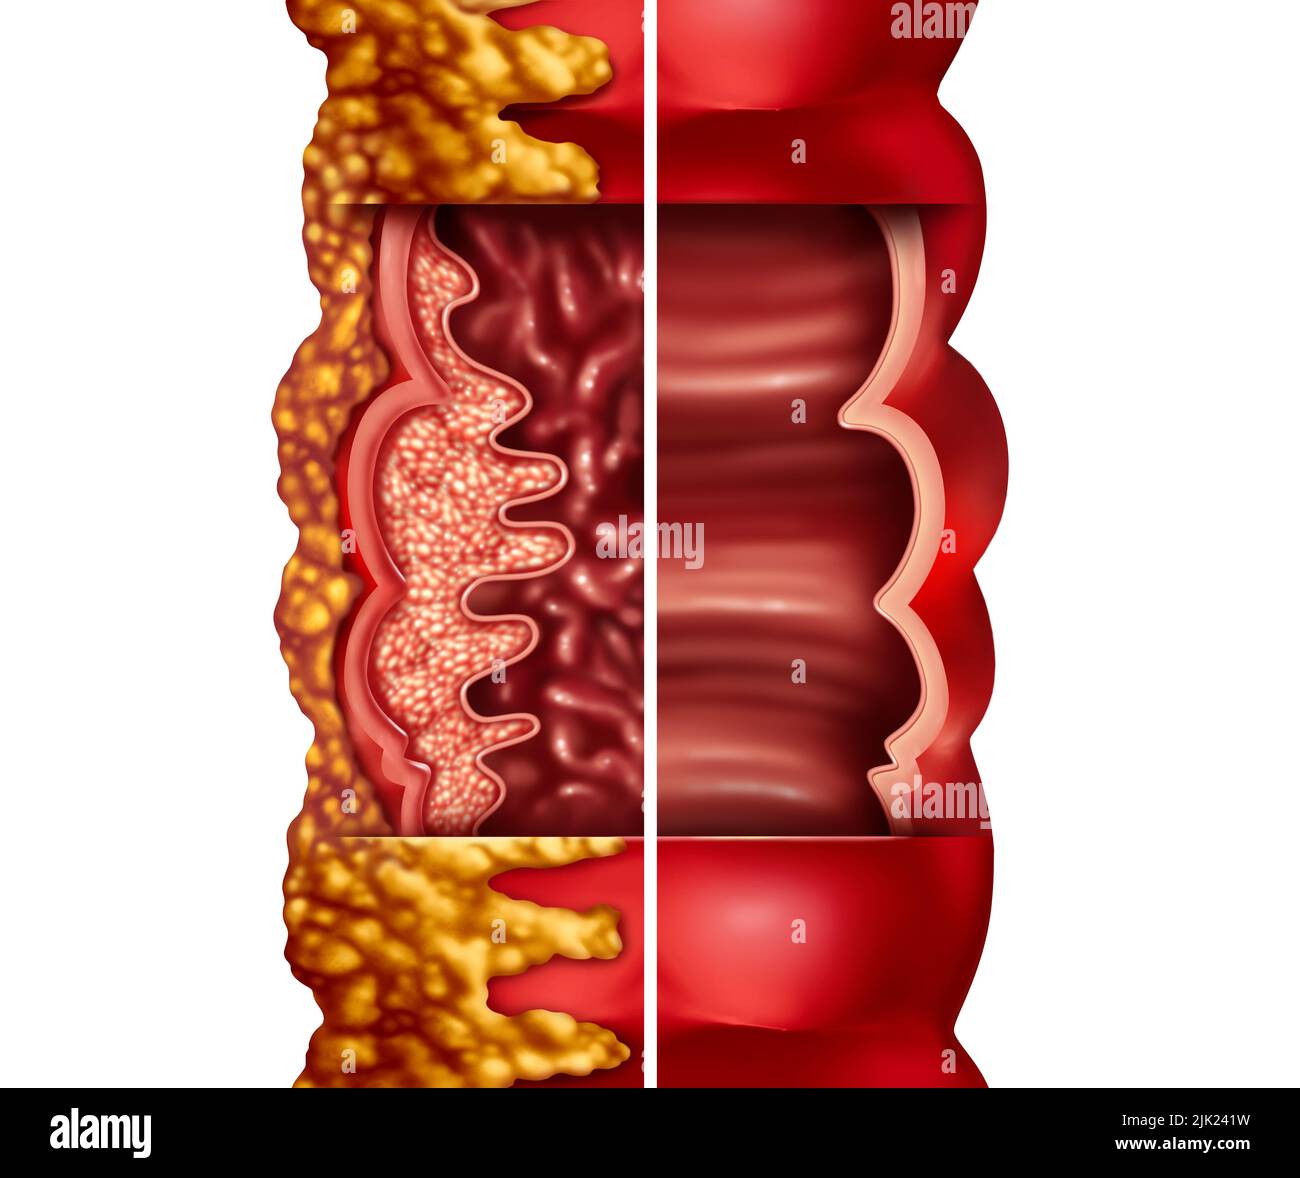 Enfermedad de Crohn y síndrome de Crohn o enfermedad de crohns y colon sano como concepto médico con un primer plano de un intestino humano Foto de stock